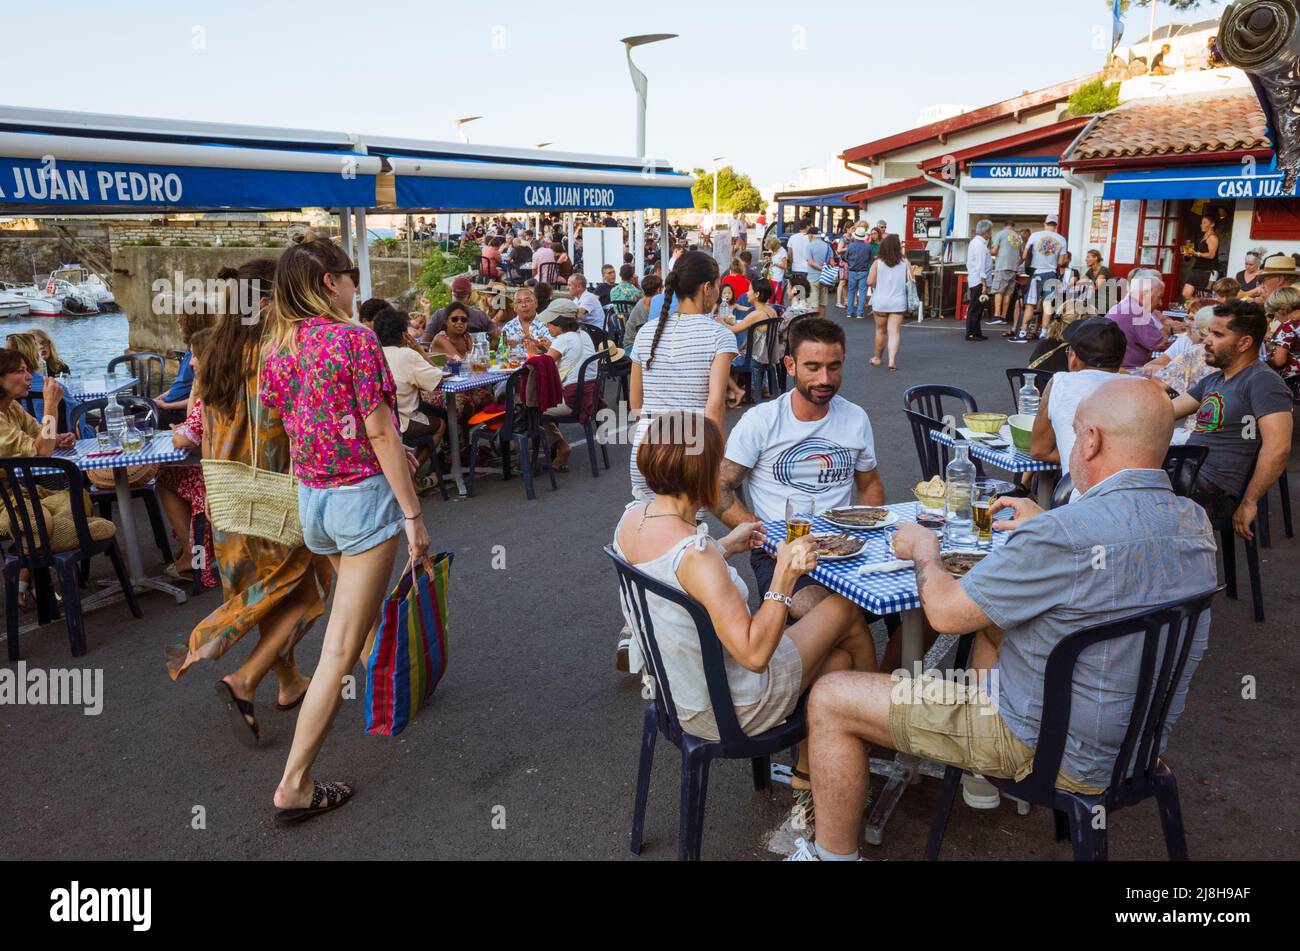 Biarritz, país Vasco francés, Francia - 19 de julio de 2019 : La Gente cena en el restaurante al aire libre Casa Juan Pedro en el puerto pesquero. Foto de stock